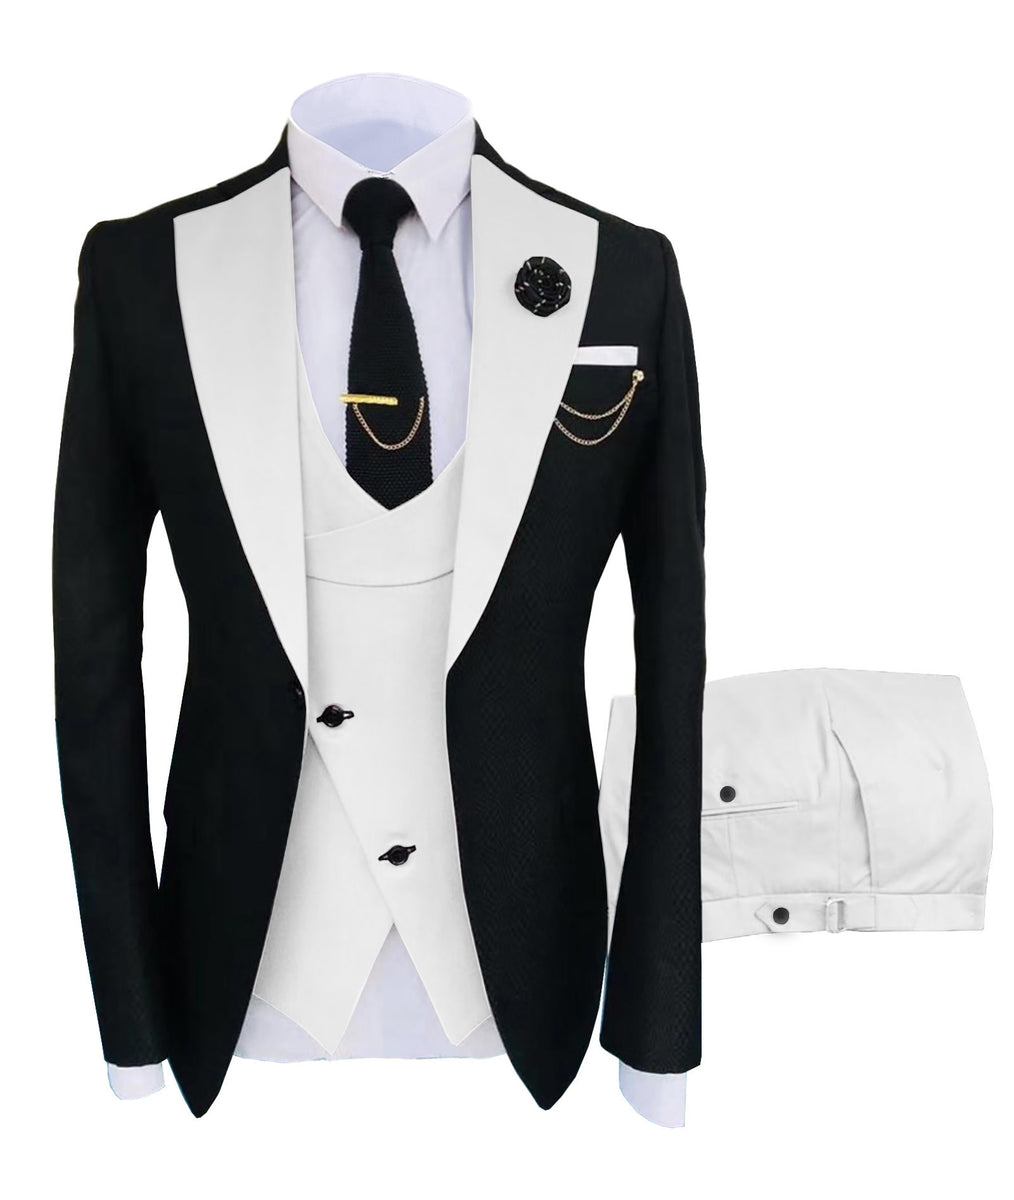 KENTON SUITS Men's Fashion Formal 3 Piece Tuxedo (Jacket + Vest + Pant ...